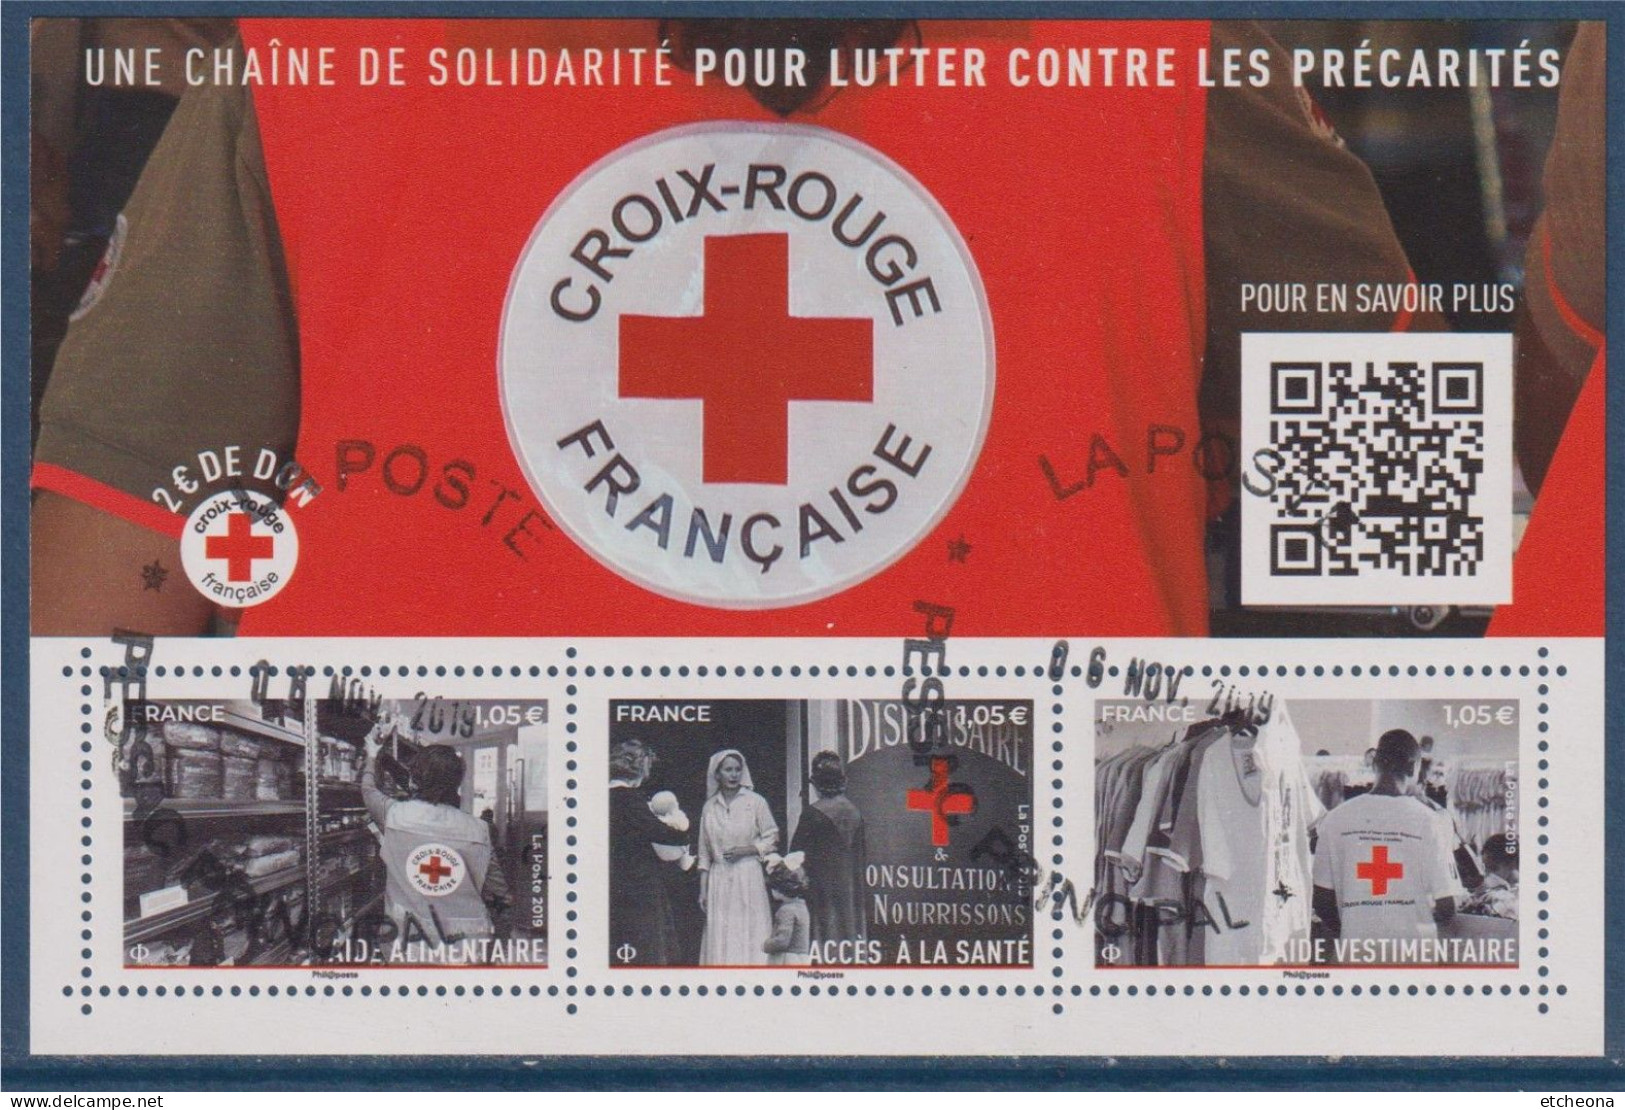 Croix Rouge 2019 Bloc Oblitéré F5350, Aide Alimentaire 5350, Vestimentaire 5352, Et Accès à La Santé 5351 - Rotes Kreuz